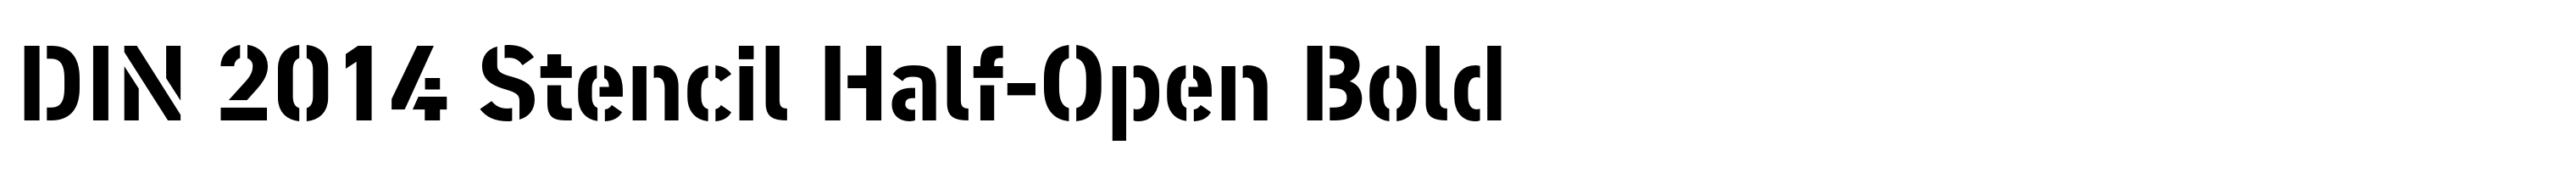 DIN 2014 Stencil Half-Open Bold